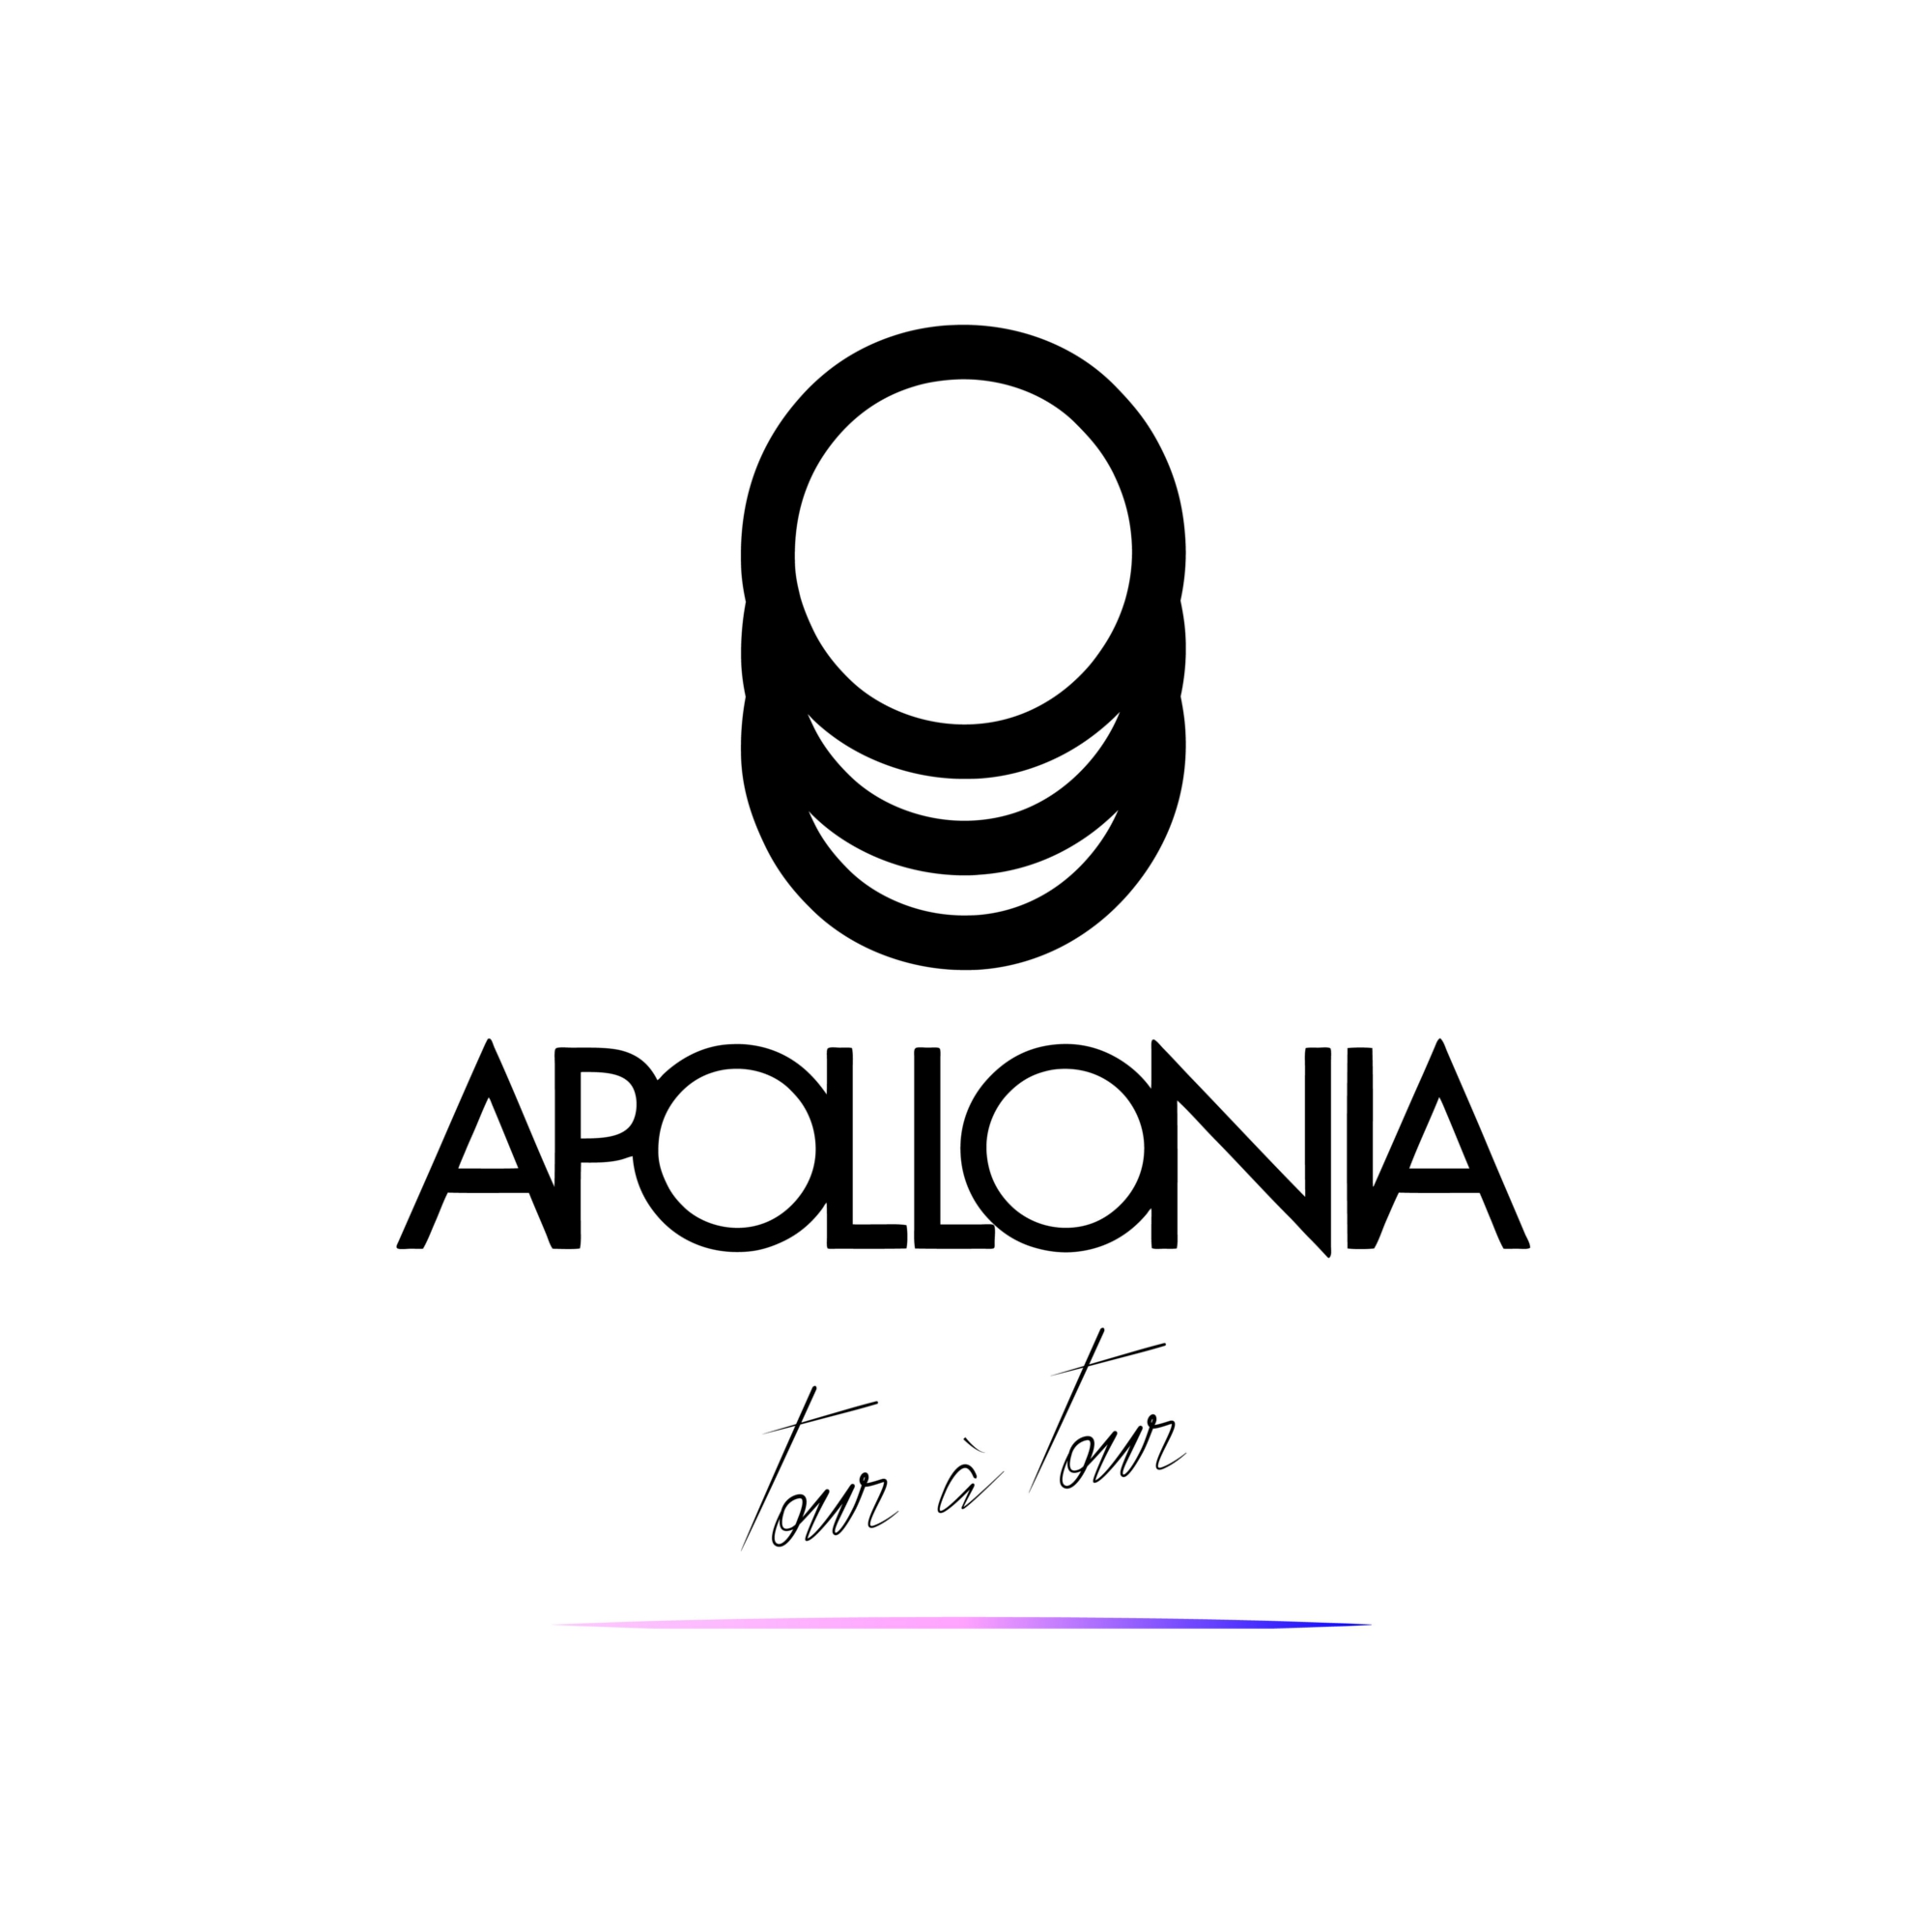 Apollonia - Tour a tour